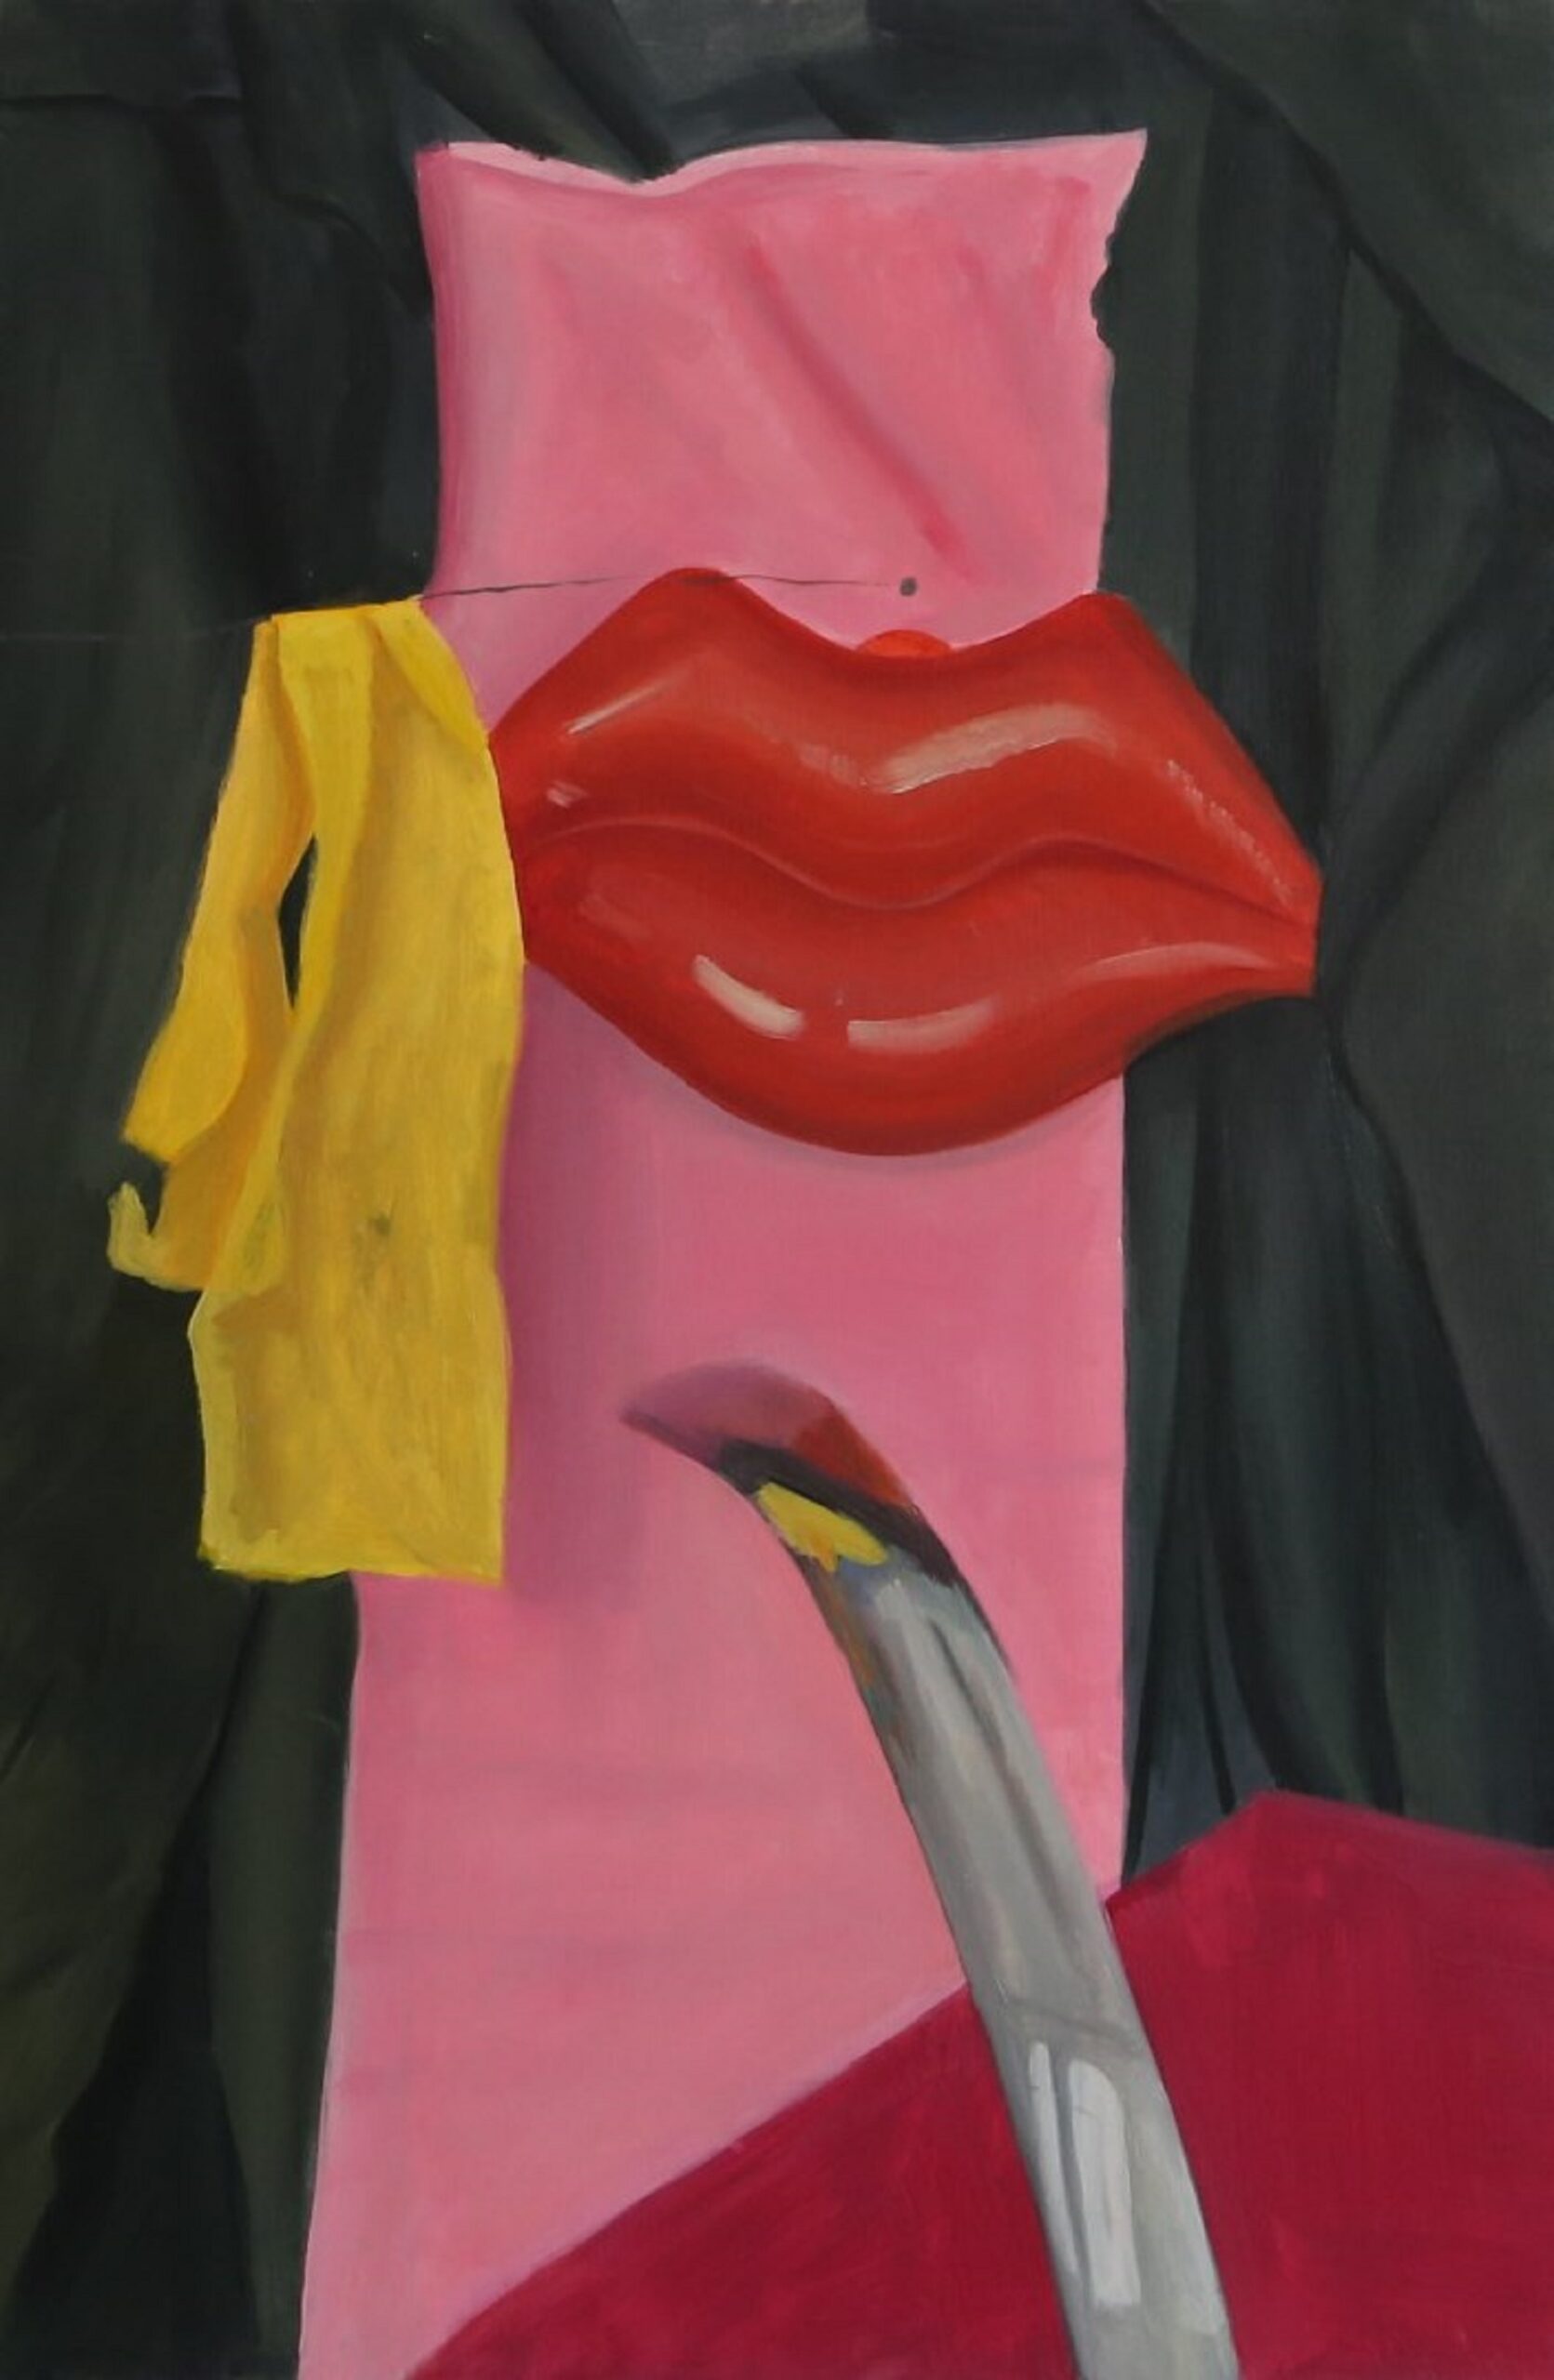 Obraz przedstawia fragment martwej natury: czerwony, dmuchany balon w kształcie ust, wiszący obok żółty szalik oraz wystający, metalowy element w dolnej części kompozycji. Przedmioty usytuowane są w otoczeniu czarnej oraz różowej draperii.